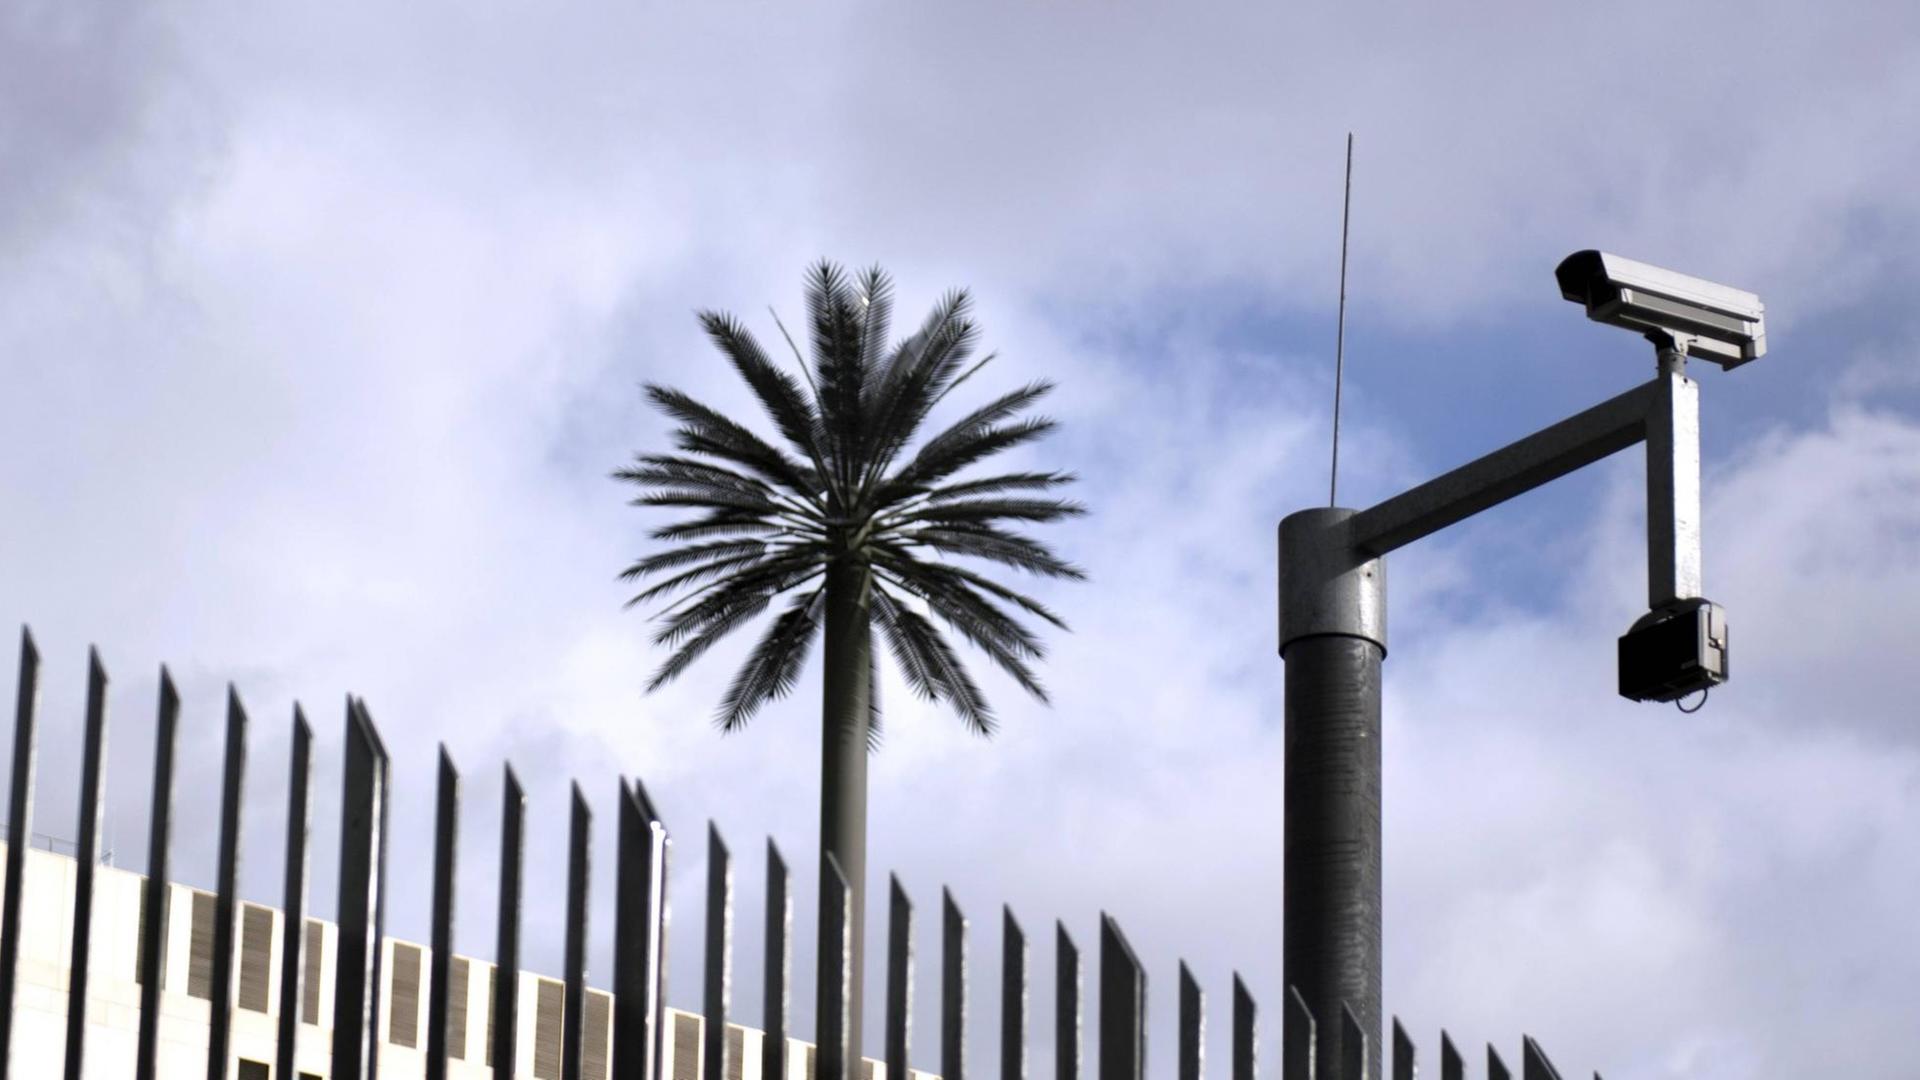 Auf der Rückseite des Gebäudes stehen 22 Meter hohe künstliche Palmen, die der Künstler Ulrich Brüschke entworfen hat.